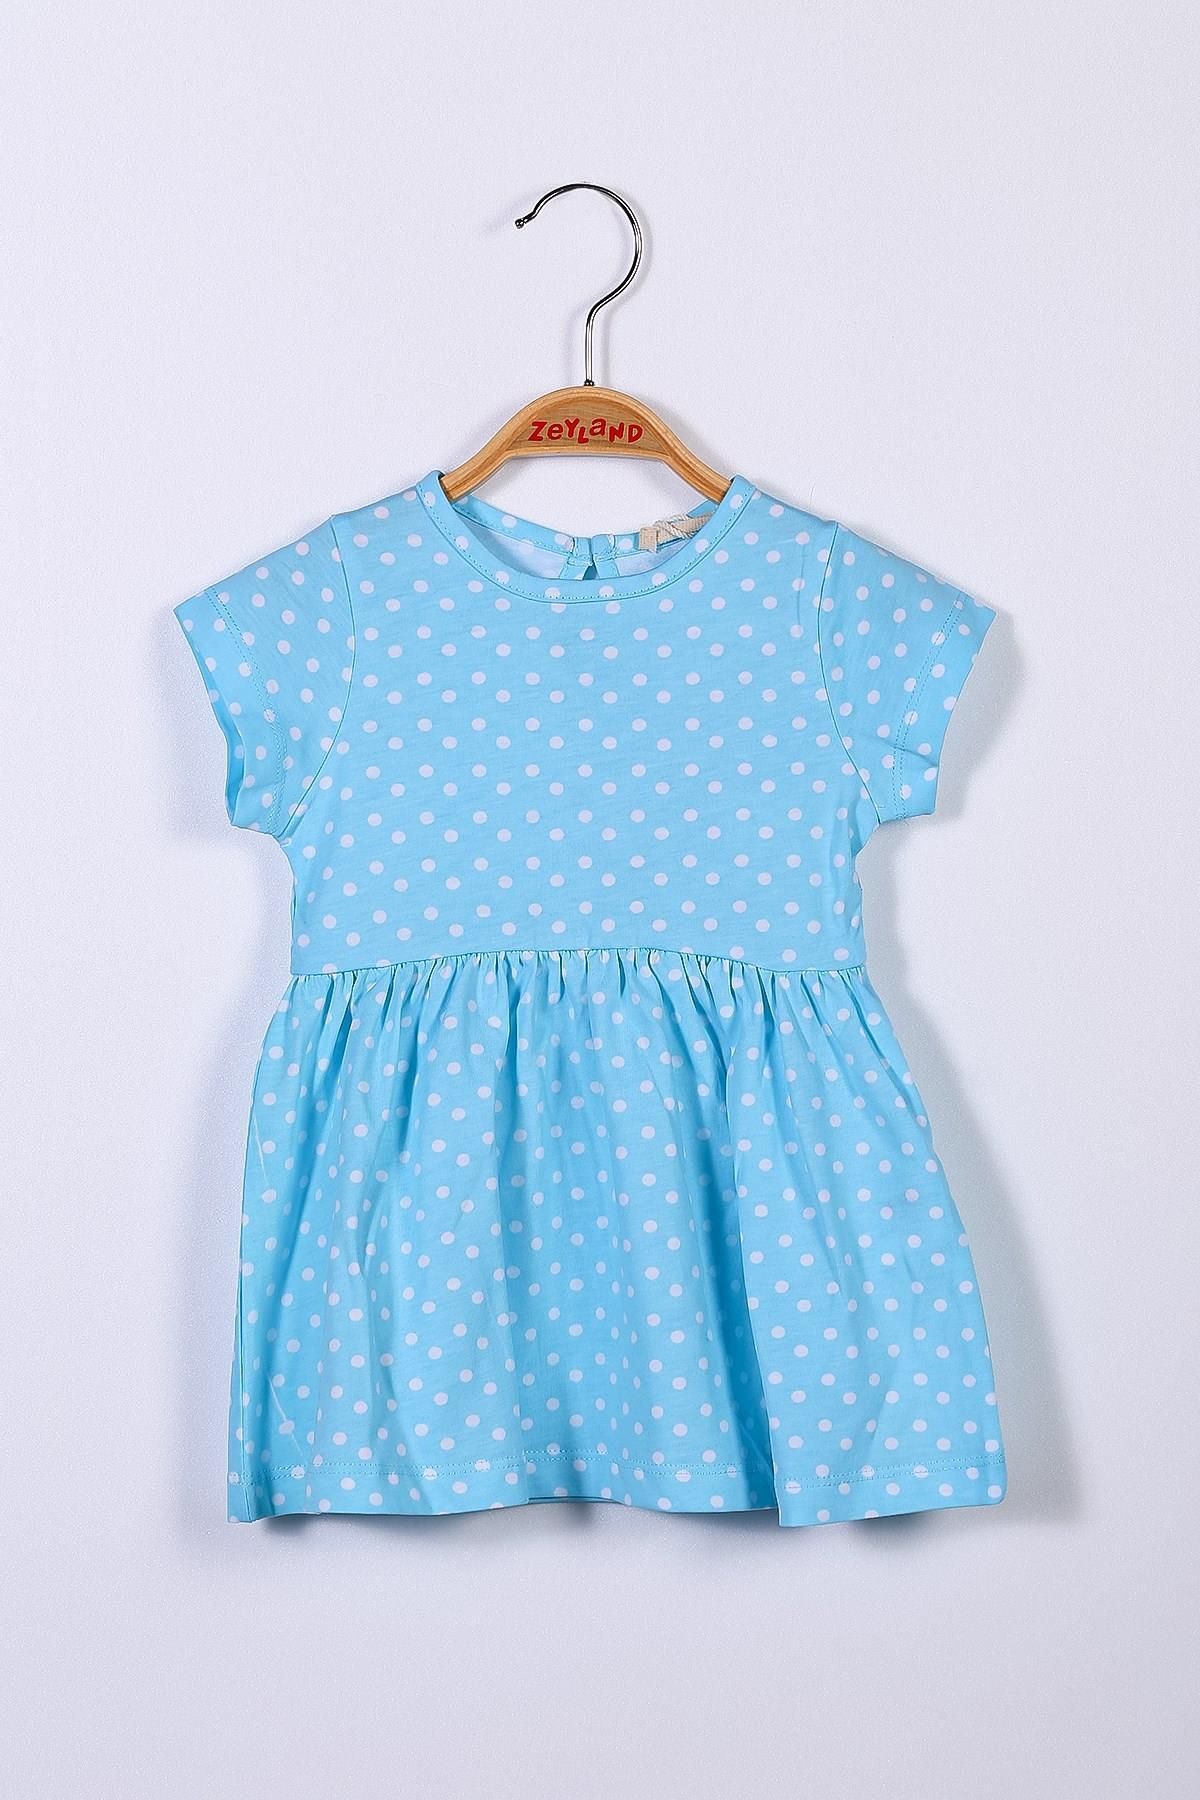 Zeyland Kız Bebek Mavi Puantiyeli Elbise (9ay-4yaş)